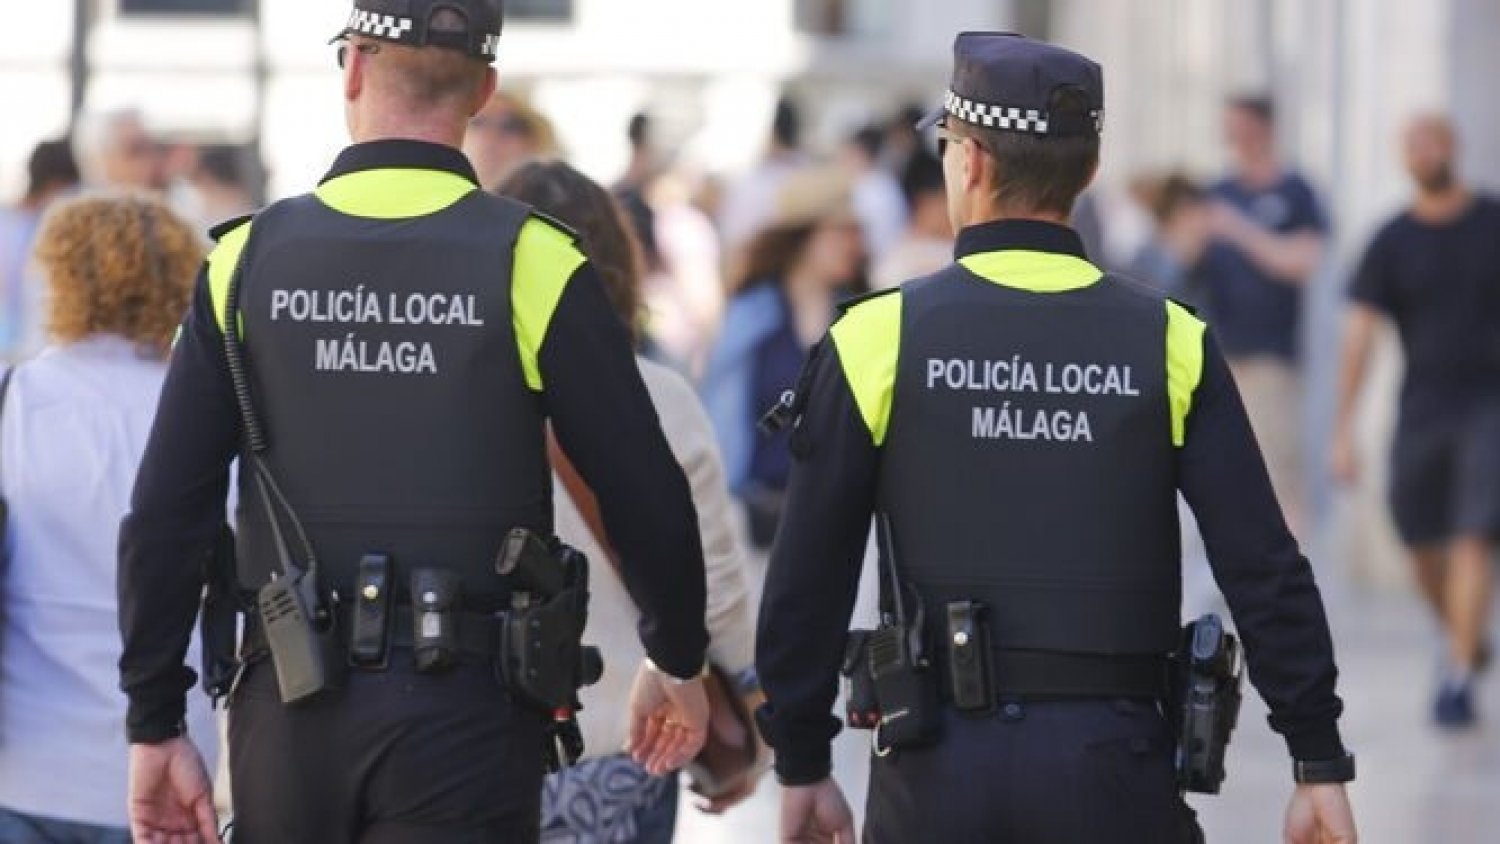 La Policía Local tramita 135 denuncias en materia de control de ruidos y convivencia en la última semana